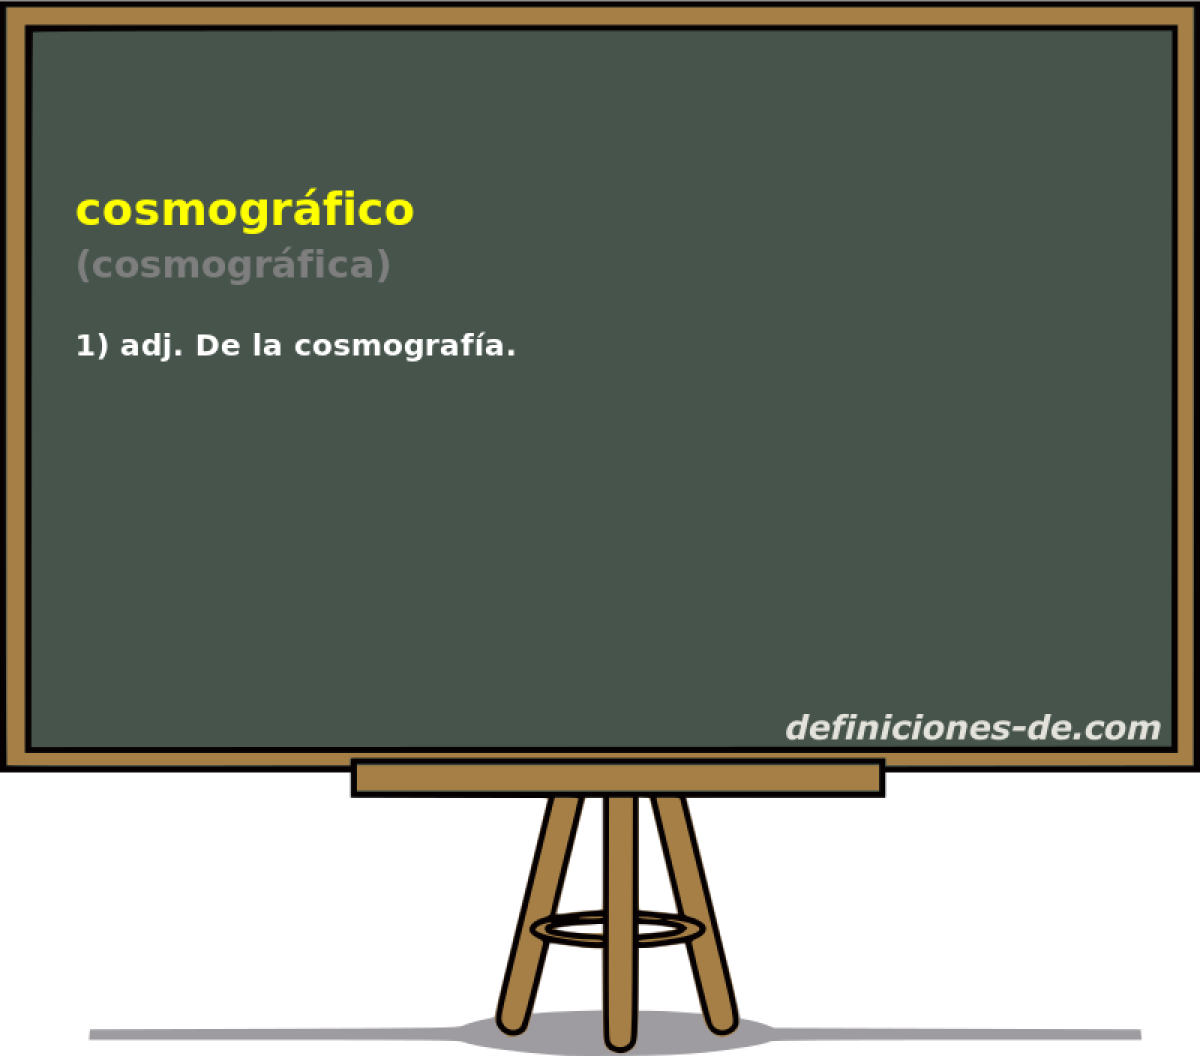 cosmogrfico (cosmogrfica)